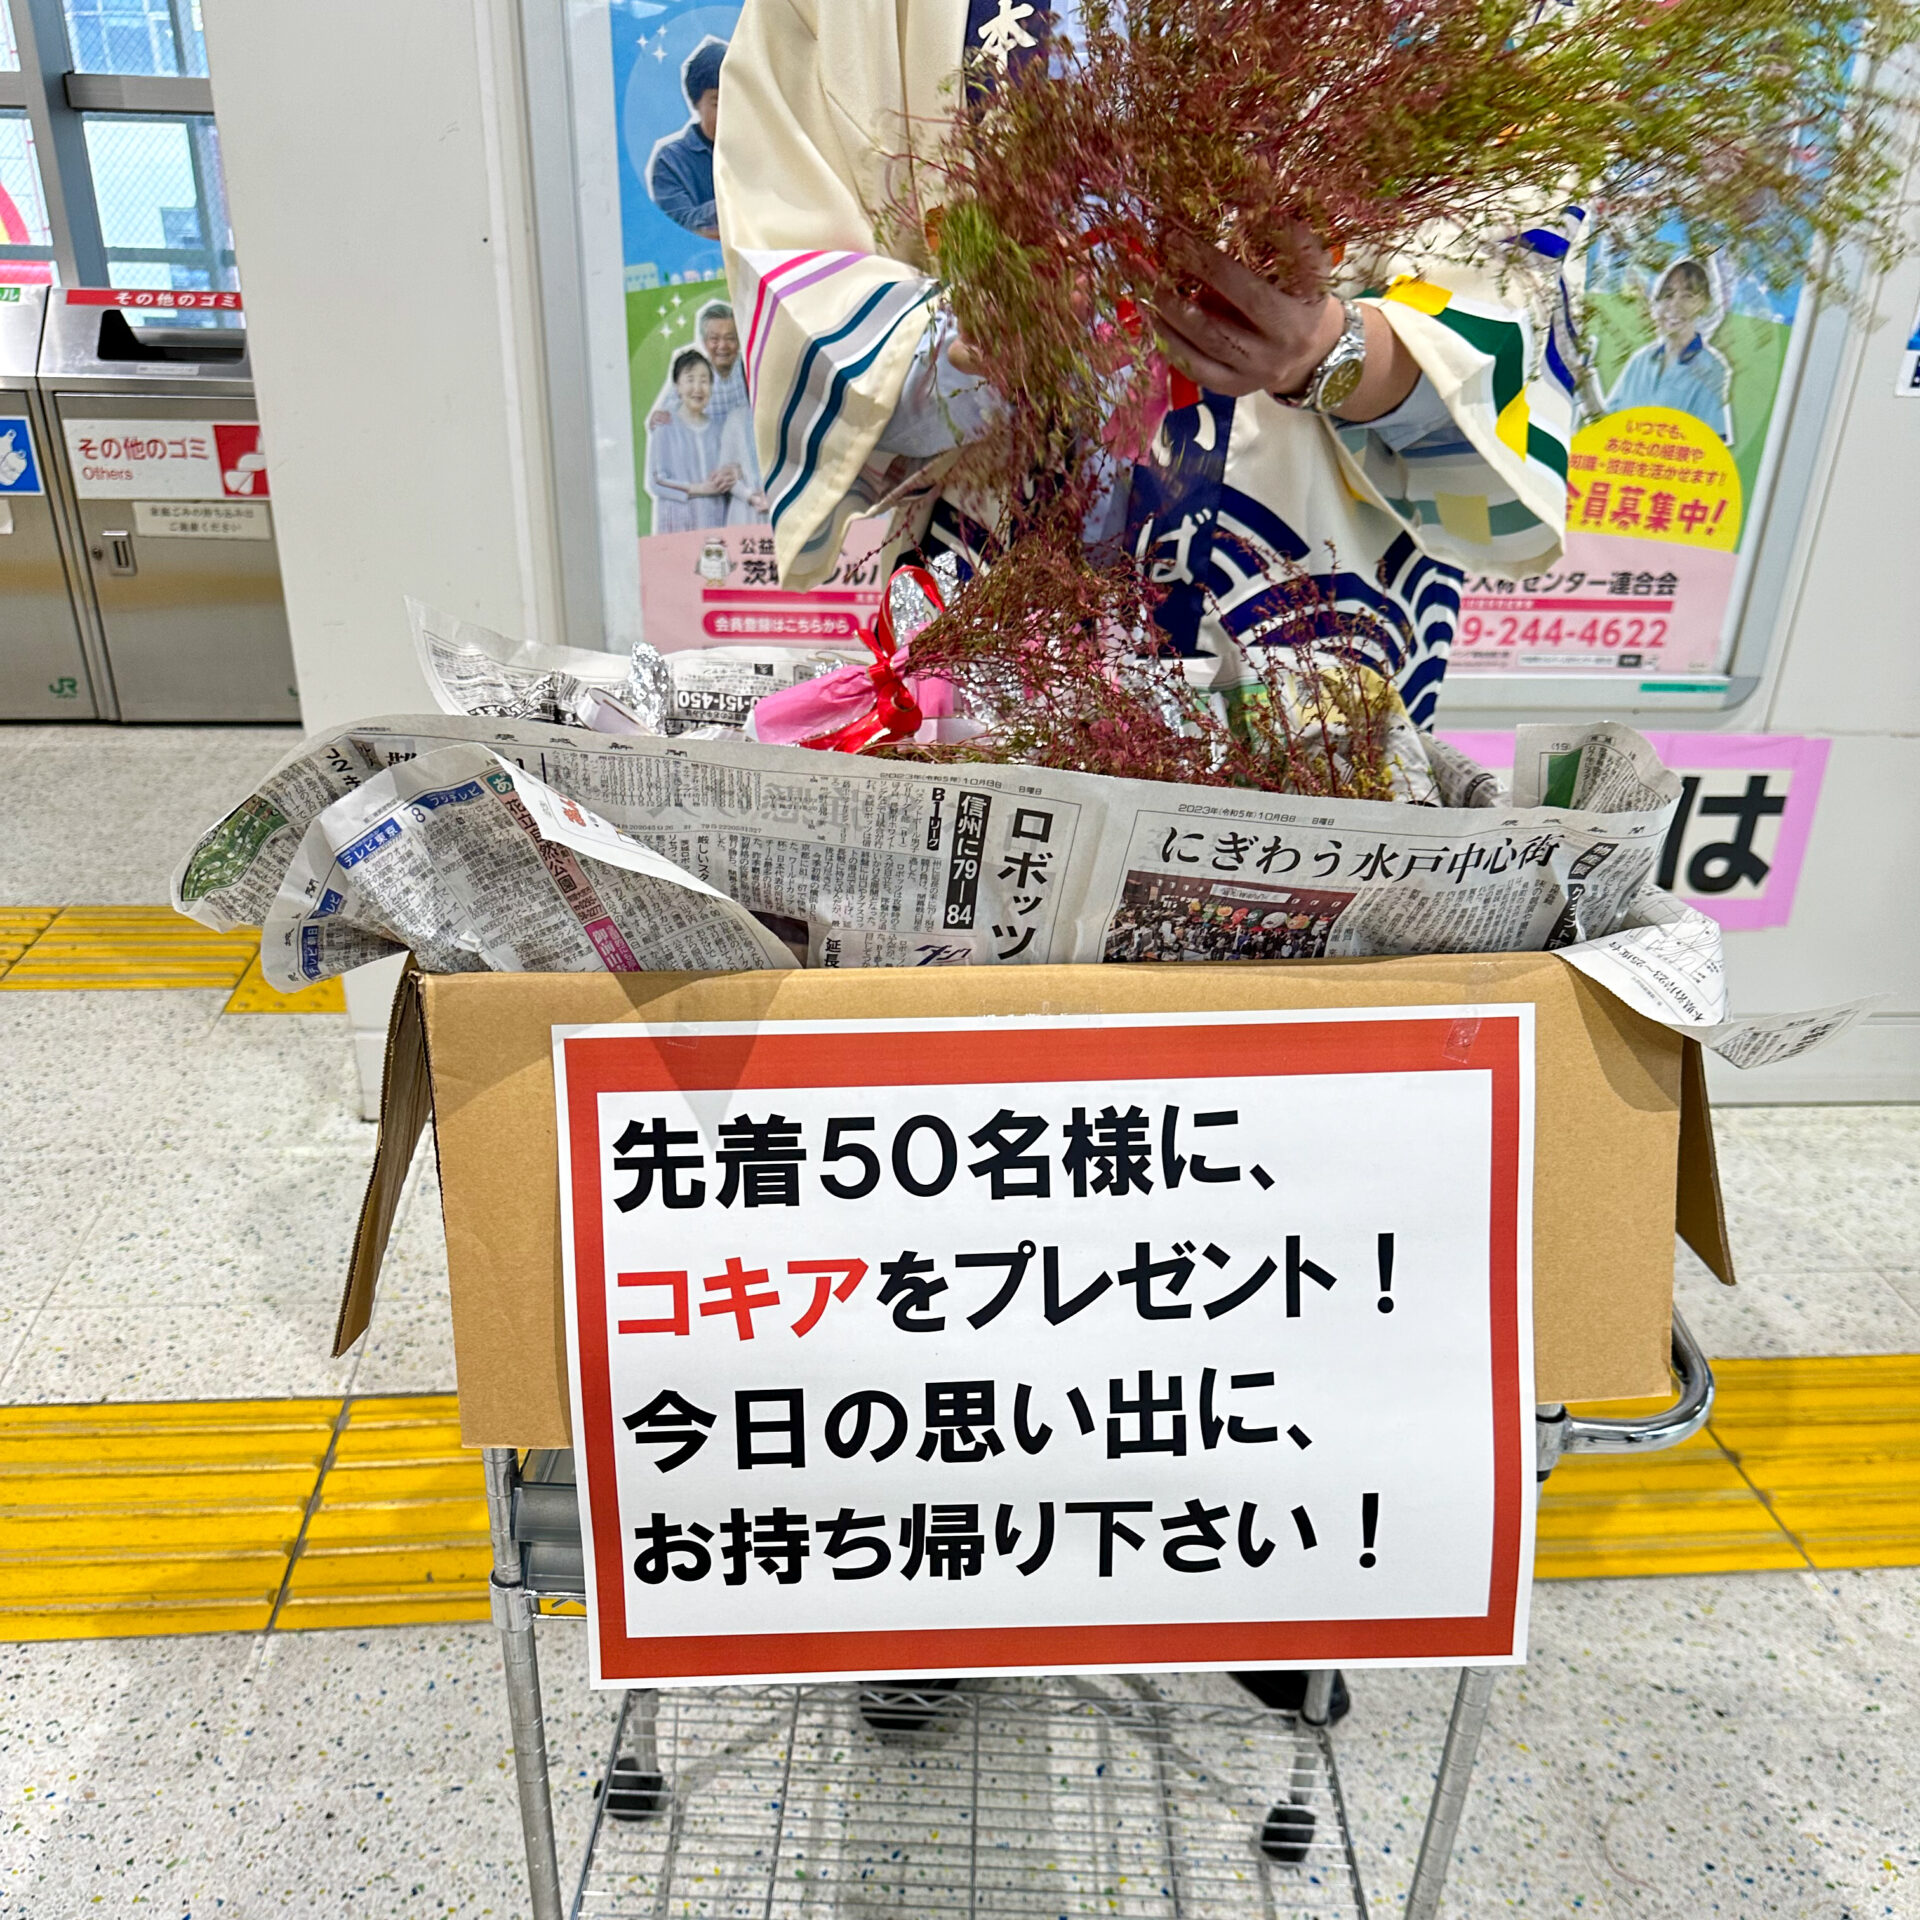 勝田駅にてコキアの限定配布